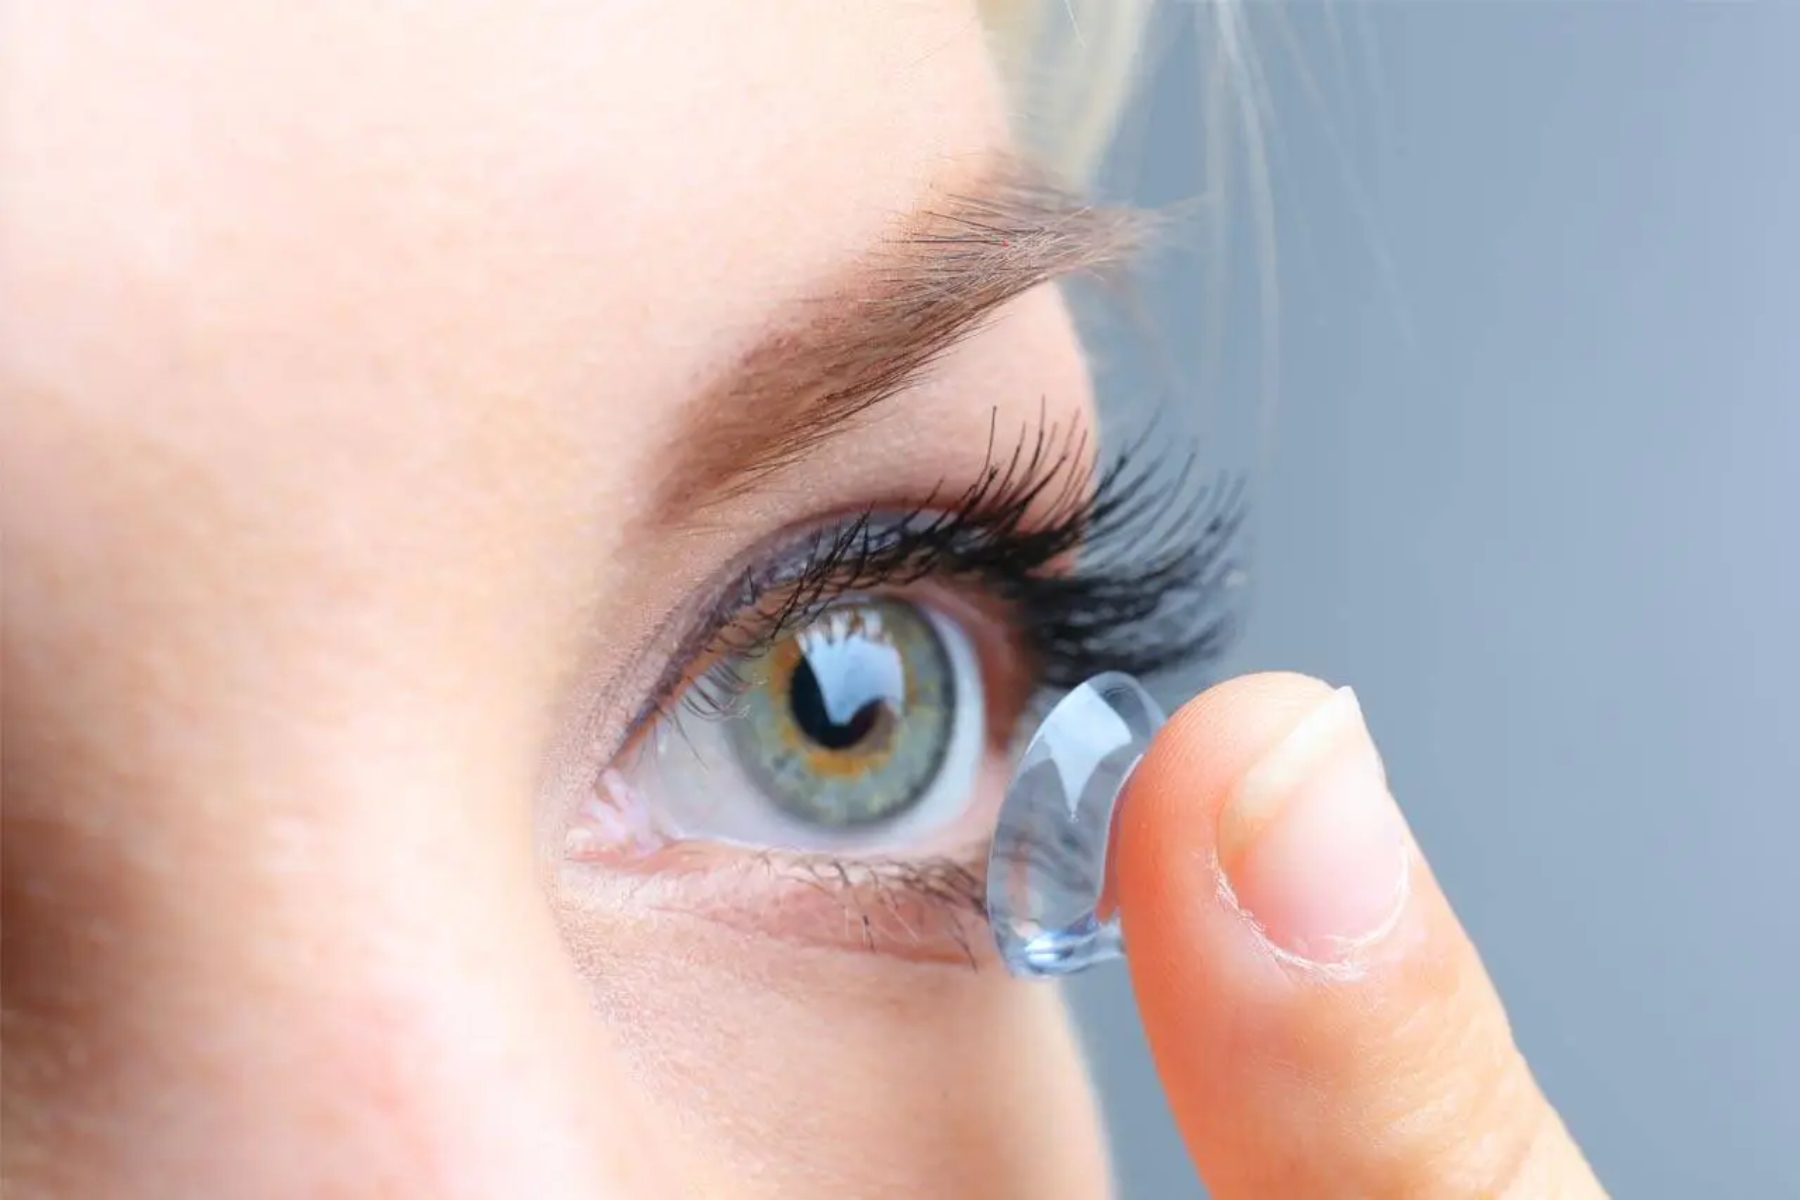 Ενδοφθάλμια πίεση: Έχετε δυσφορία στα μάτια ή άλλα προβλήματα όρασης;